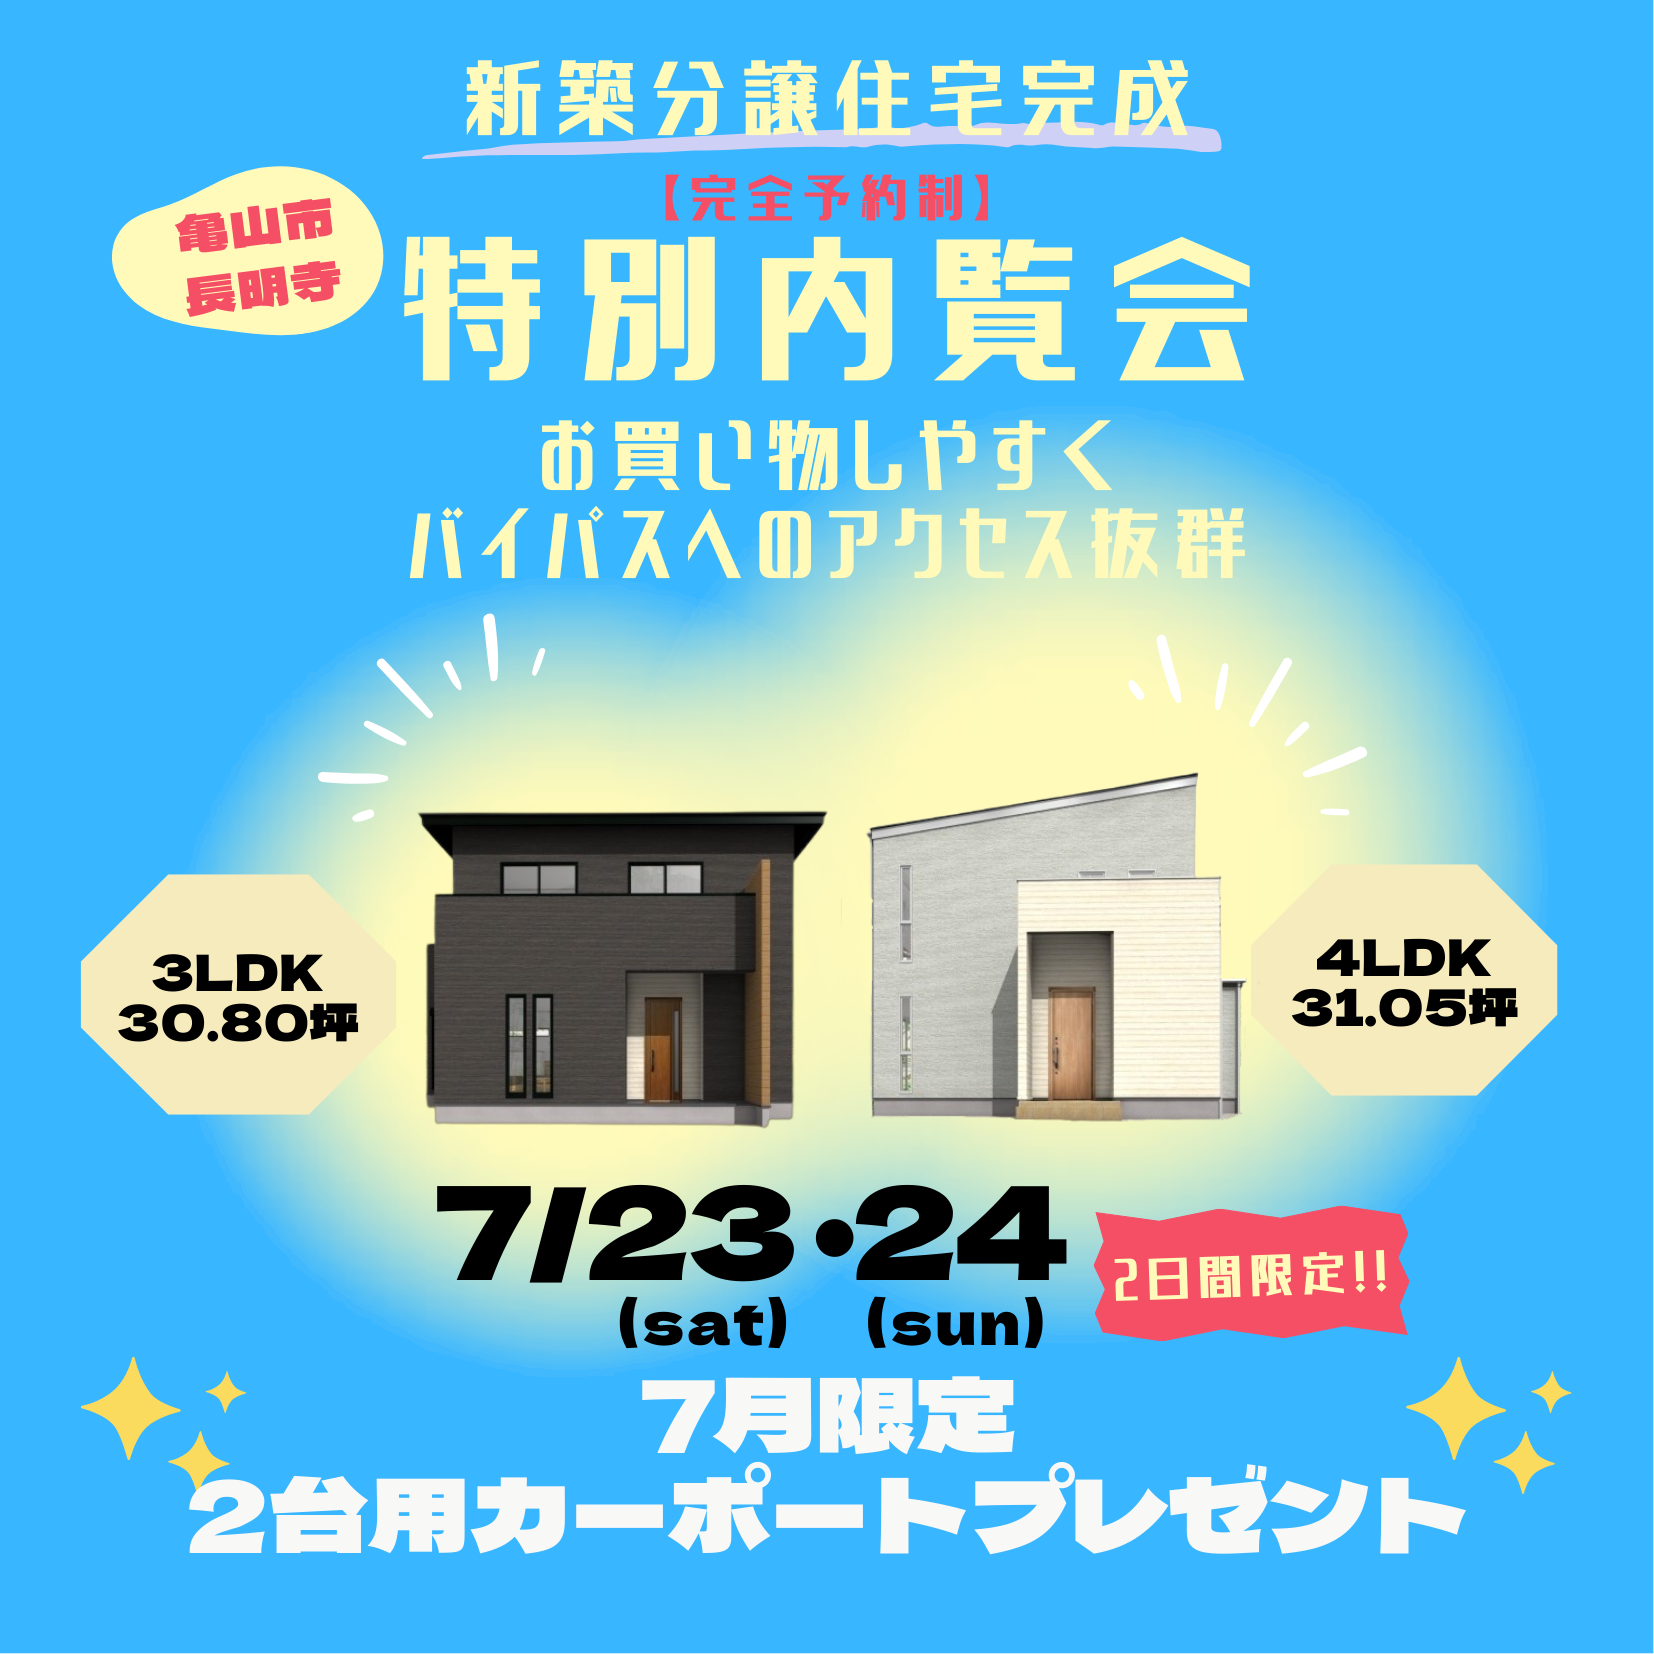 【7/23(土)・24(日)】亀山市にて完成見学会開催🐻